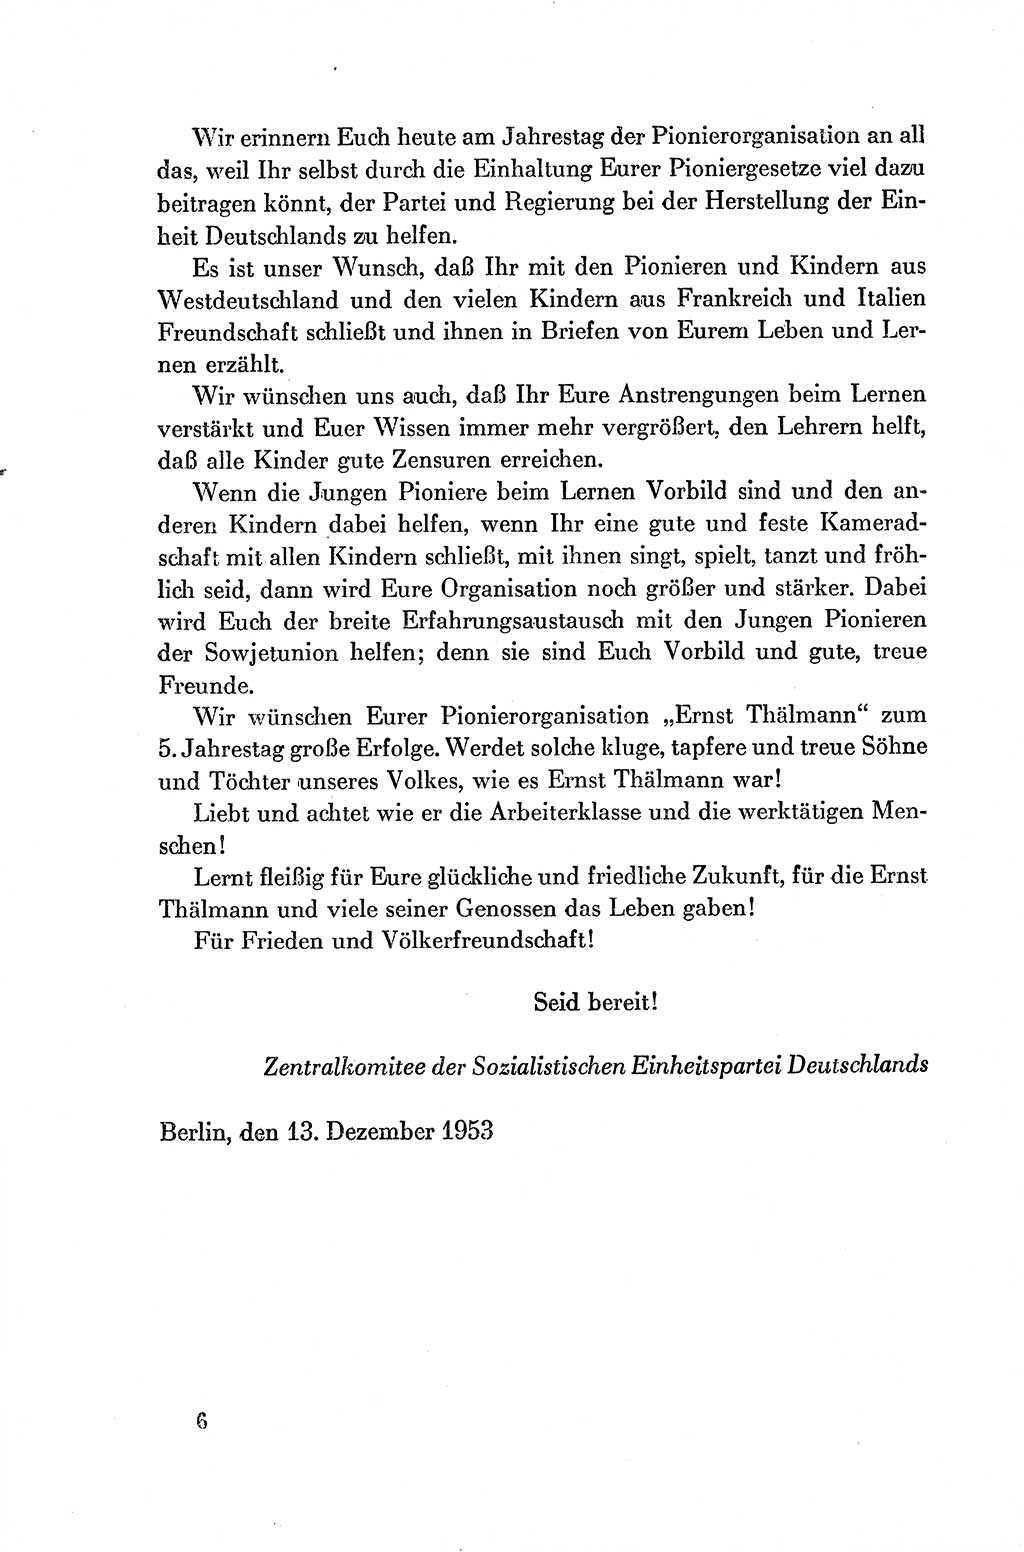 Dokumente der Sozialistischen Einheitspartei Deutschlands (SED) [Deutsche Demokratische Republik (DDR)] 1954-1955, Seite 6 (Dok. SED DDR 1954-1955, S. 6)